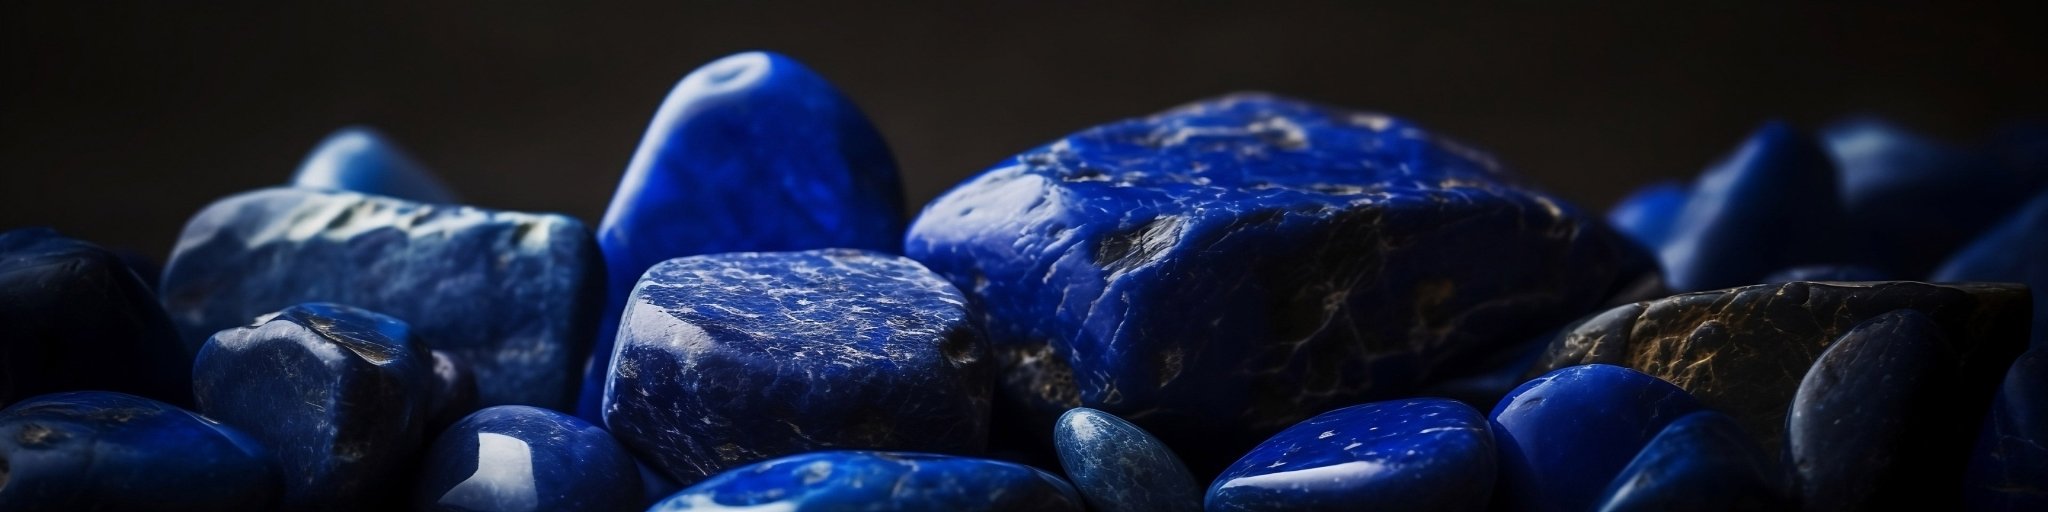 Lapis Lazuli - Petite Vagabonde